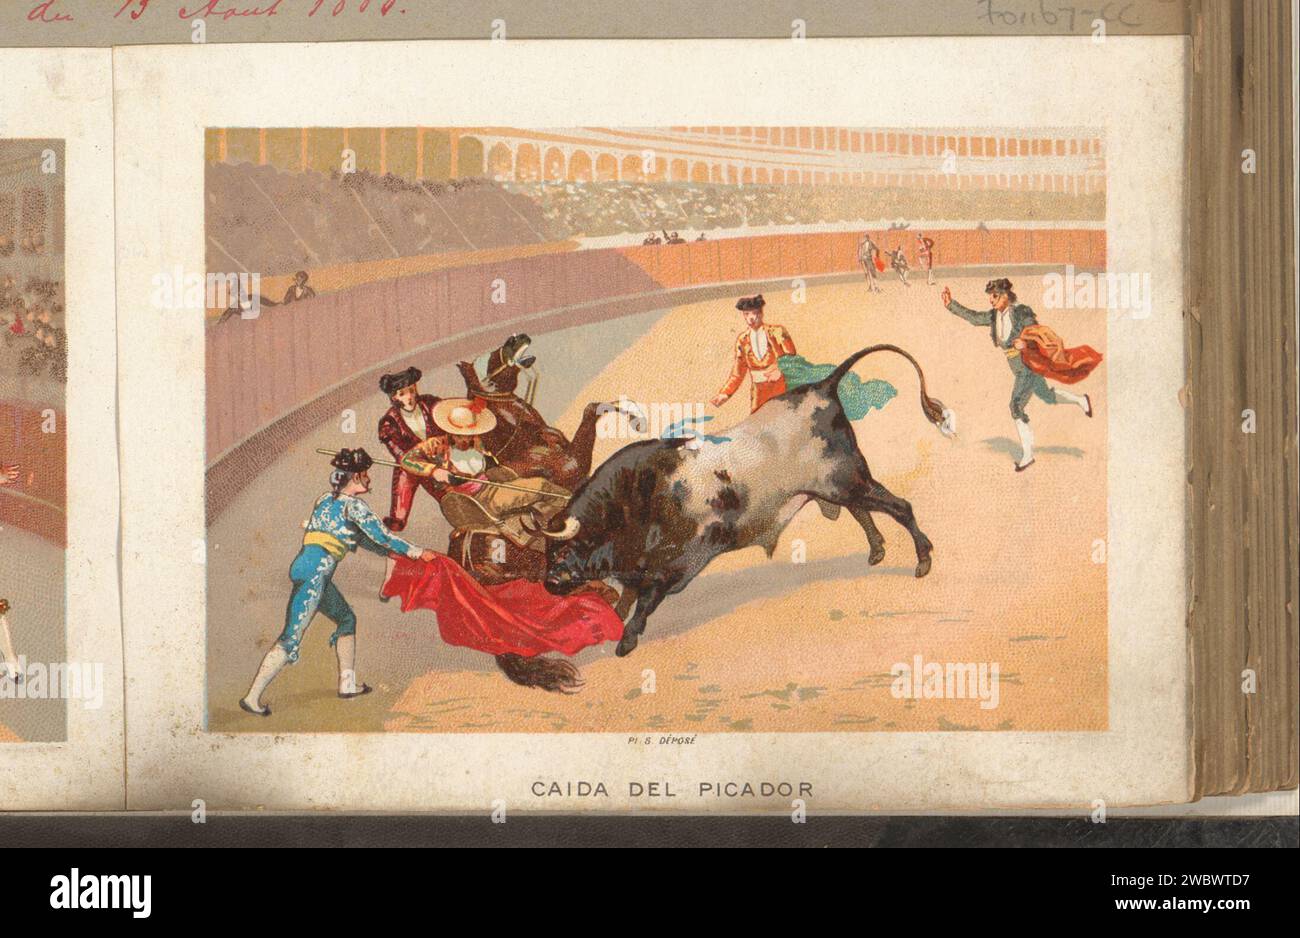 Picador Fall, Anonyme, 1880 - 1910 imprimer cette photo fait partie d'un album. taureau en papier, toreador Banque D'Images